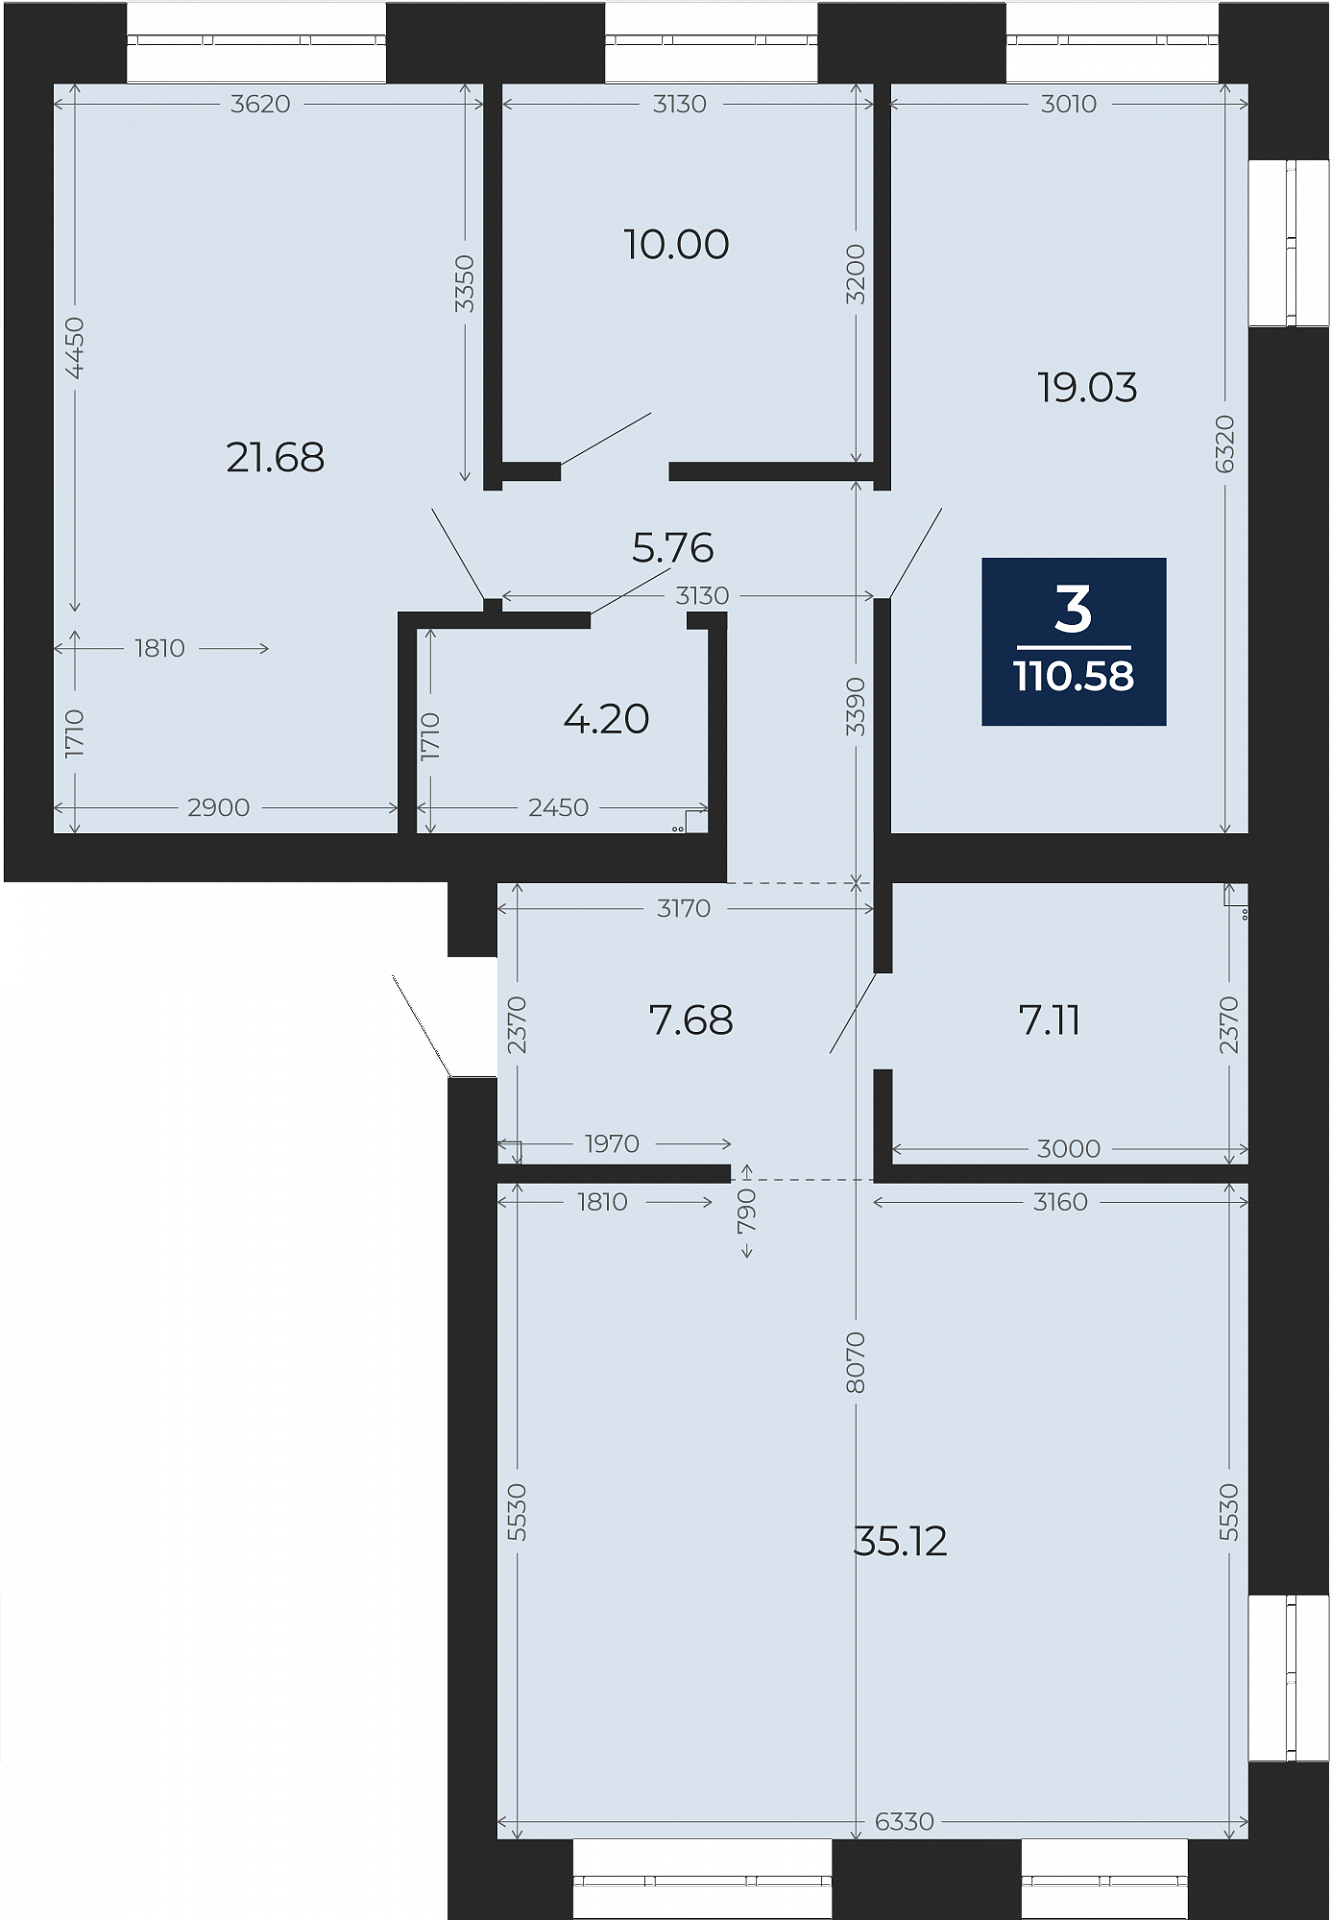 Квартира № 34, 3-комнатная, 110.58 кв. м, 6 этаж